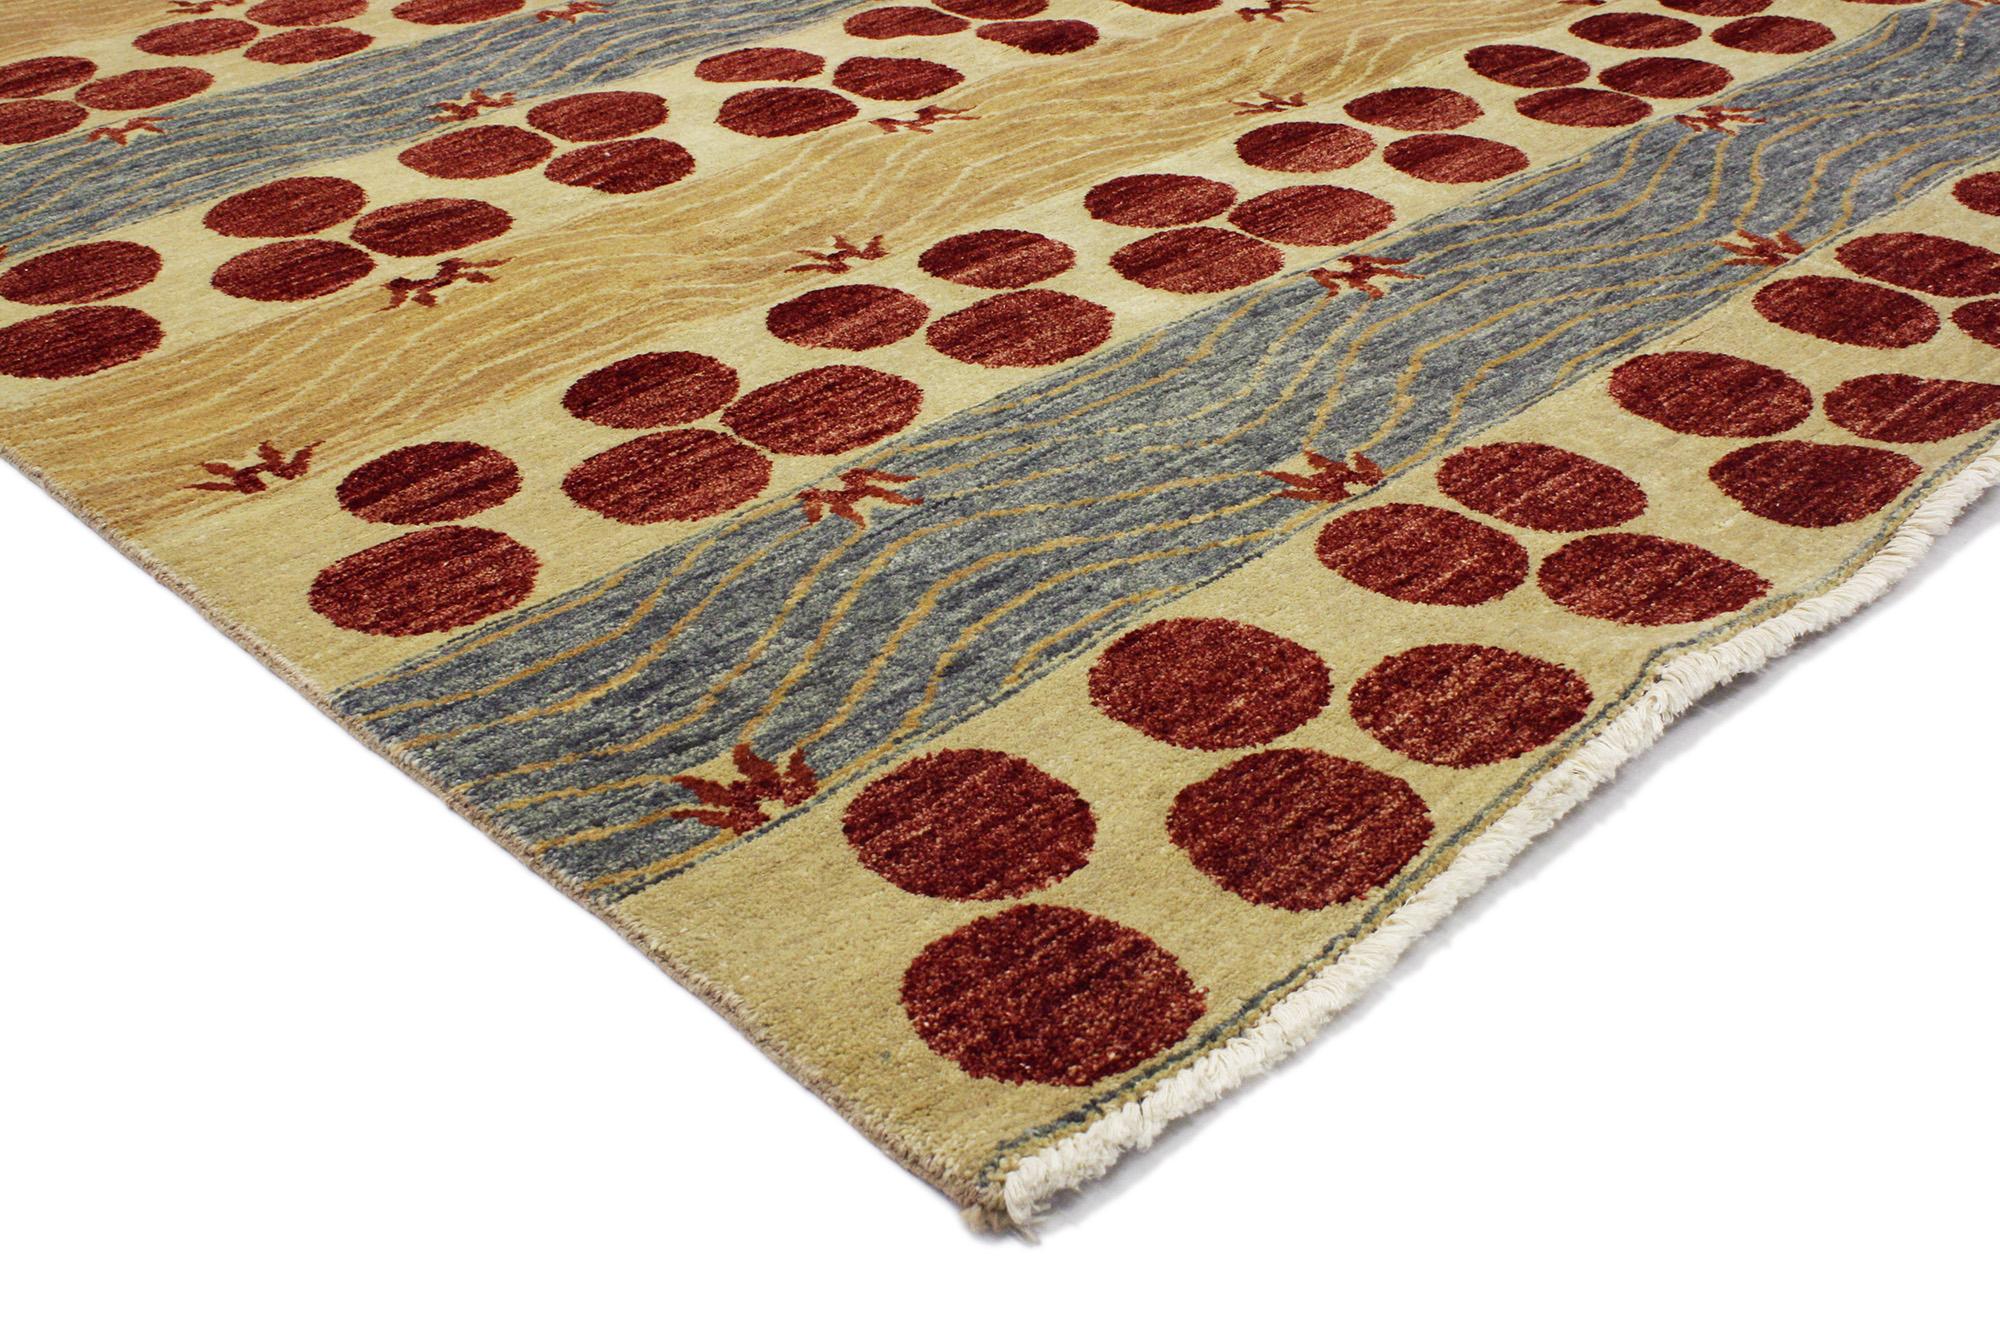 30289 Transitional Indian Area Rug, 05'09 X 09'03. Dieser moderne indische Teppich aus handgeknüpfter Wolle zeigt ein dynamisches, großflächiges Chintamani-Muster in prächtigen, warmen Farben. Das klassische Chintamani-Motiv, das aus drei Scheiben